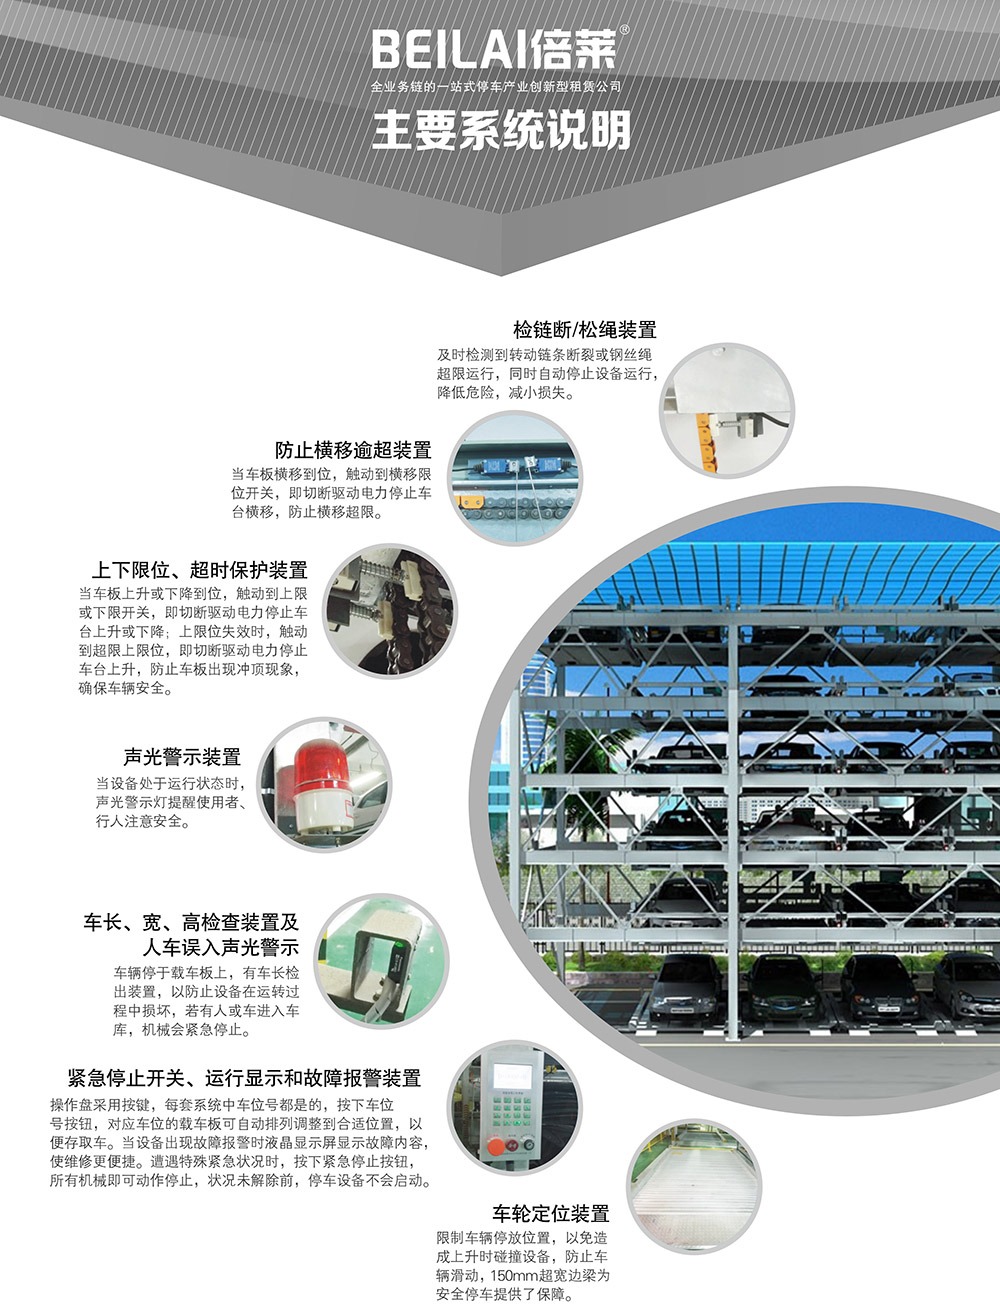 重庆四川四至六层PSH4-6升降横移立体车库主要系统说明.jpg